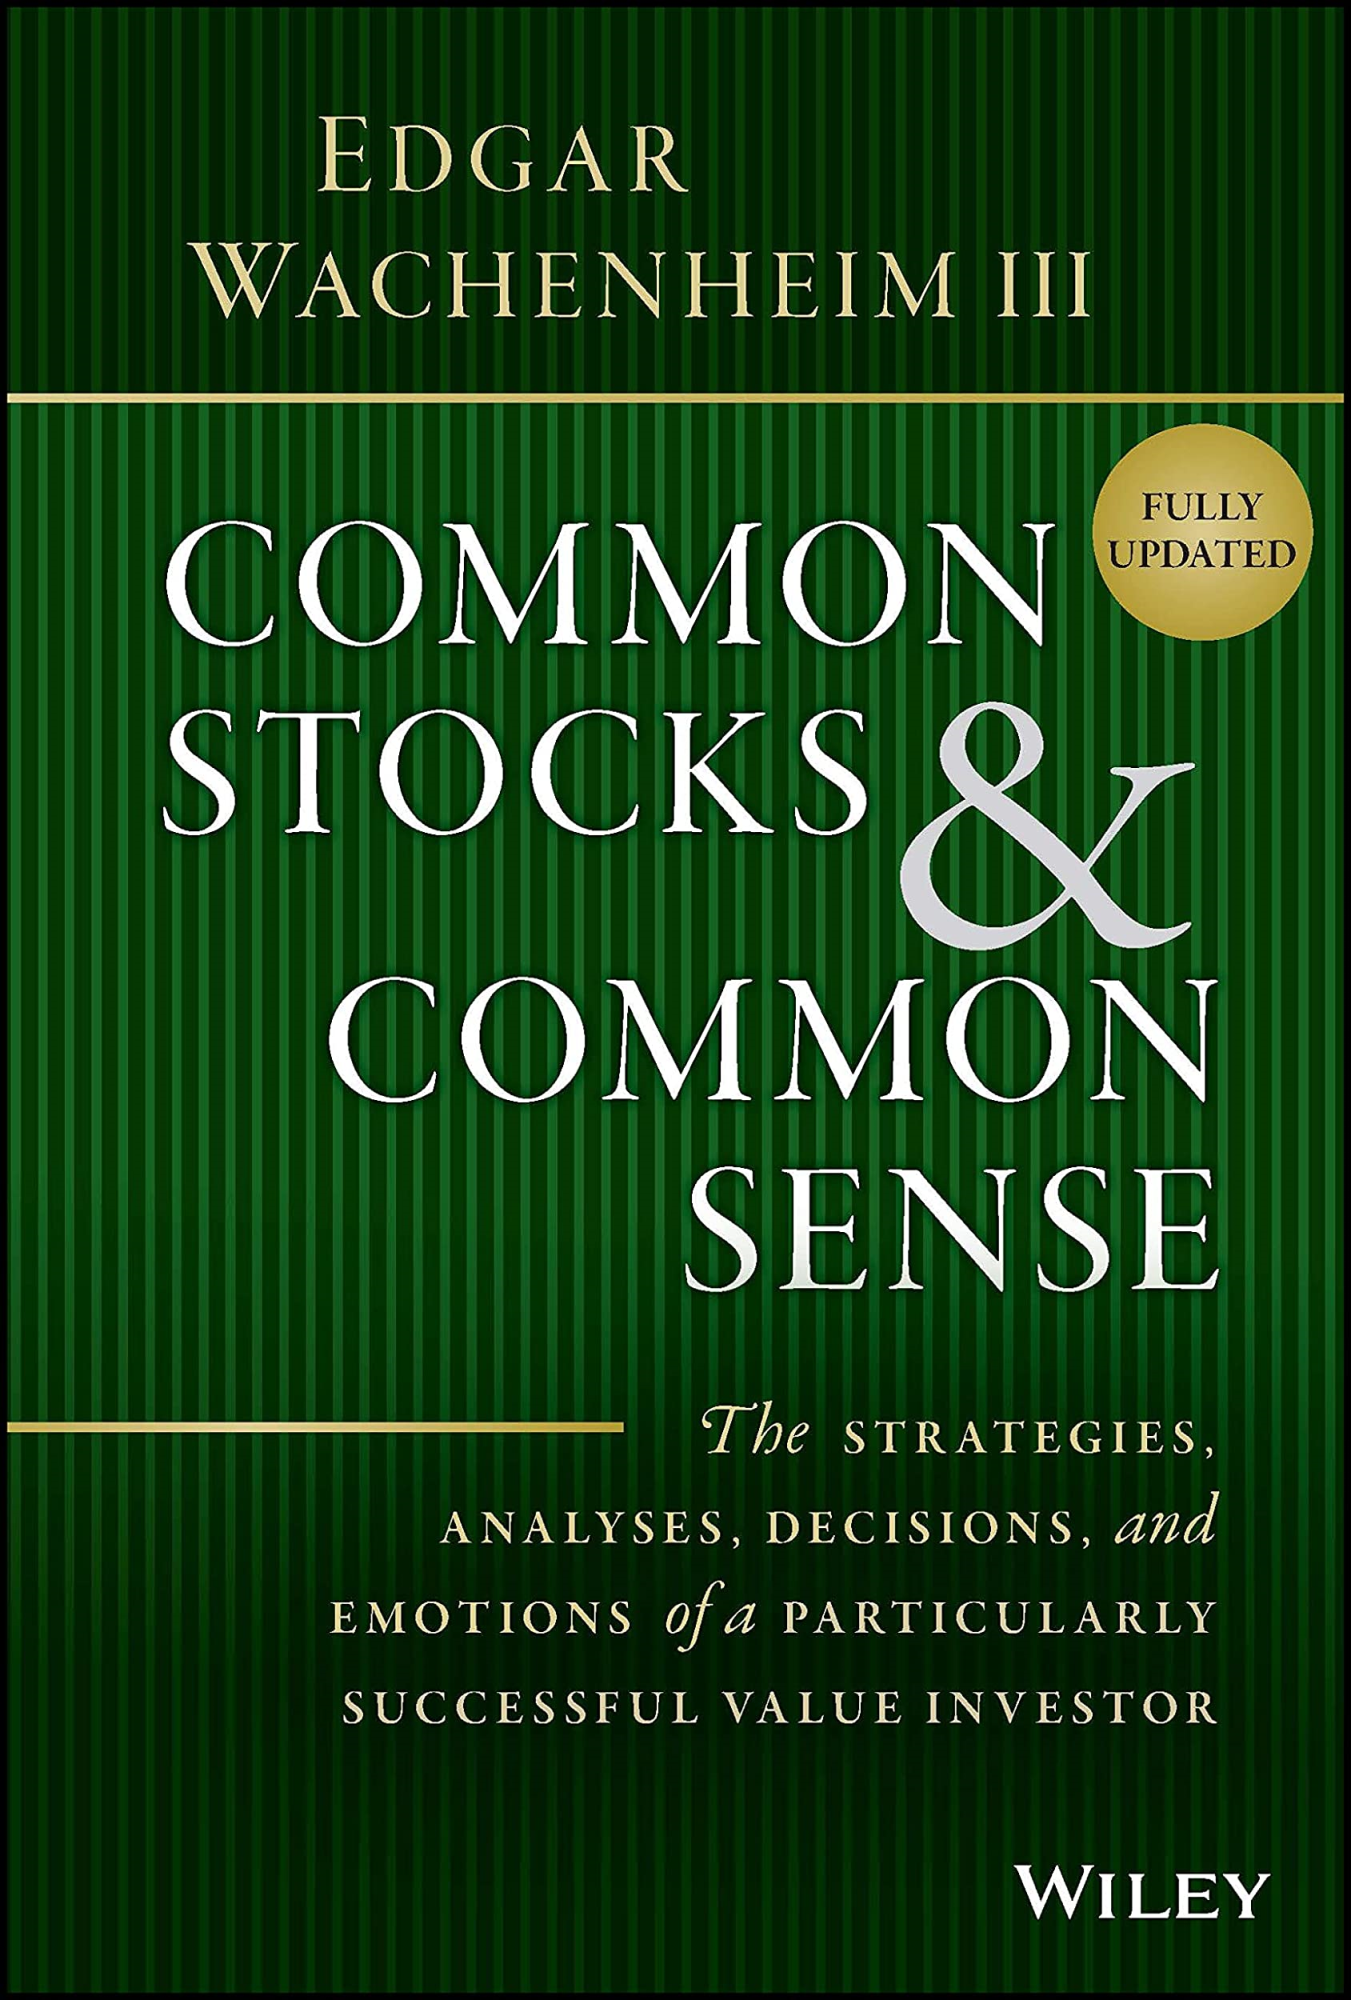 LIbri UK/US E Wachenheim - Common Stocks And Common Sense - The Strategies, Analyses, Decisions, And Emotions Of A Particularly Successful Value Investor, Fully U NUOVO SIGILLATO, EDIZIONE DEL 29/08/2022 SUBITO DISPONIBILE